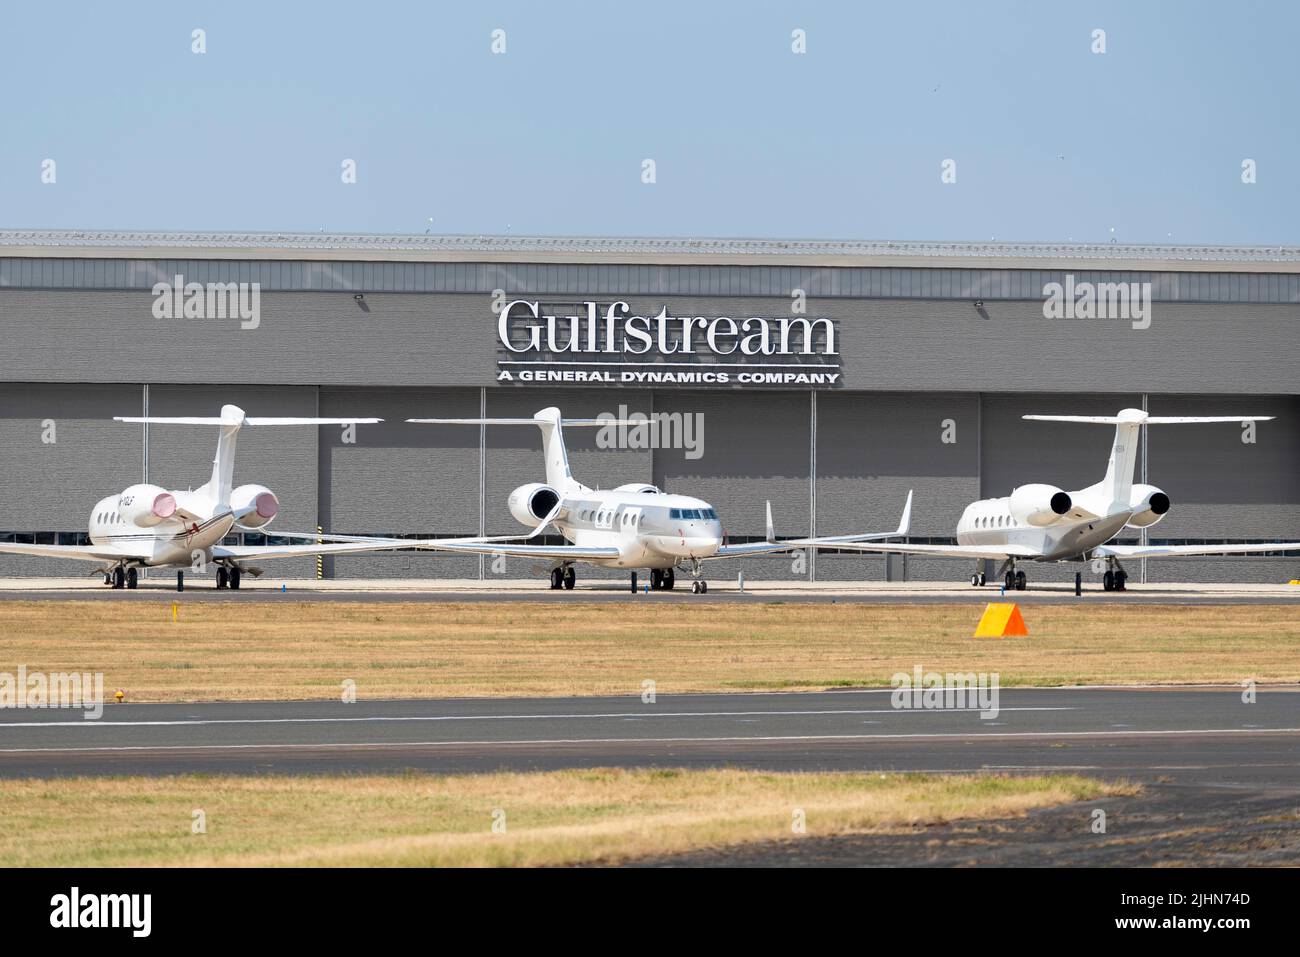 Gulfstream MRO Hangar, aeroporto di Farnborough, Hampshire, Regno Unito. Jet privato parcheggiato all'esterno. Manutenzione, riparazione e operazioni hangar di VolkerFitzpatrick Foto Stock